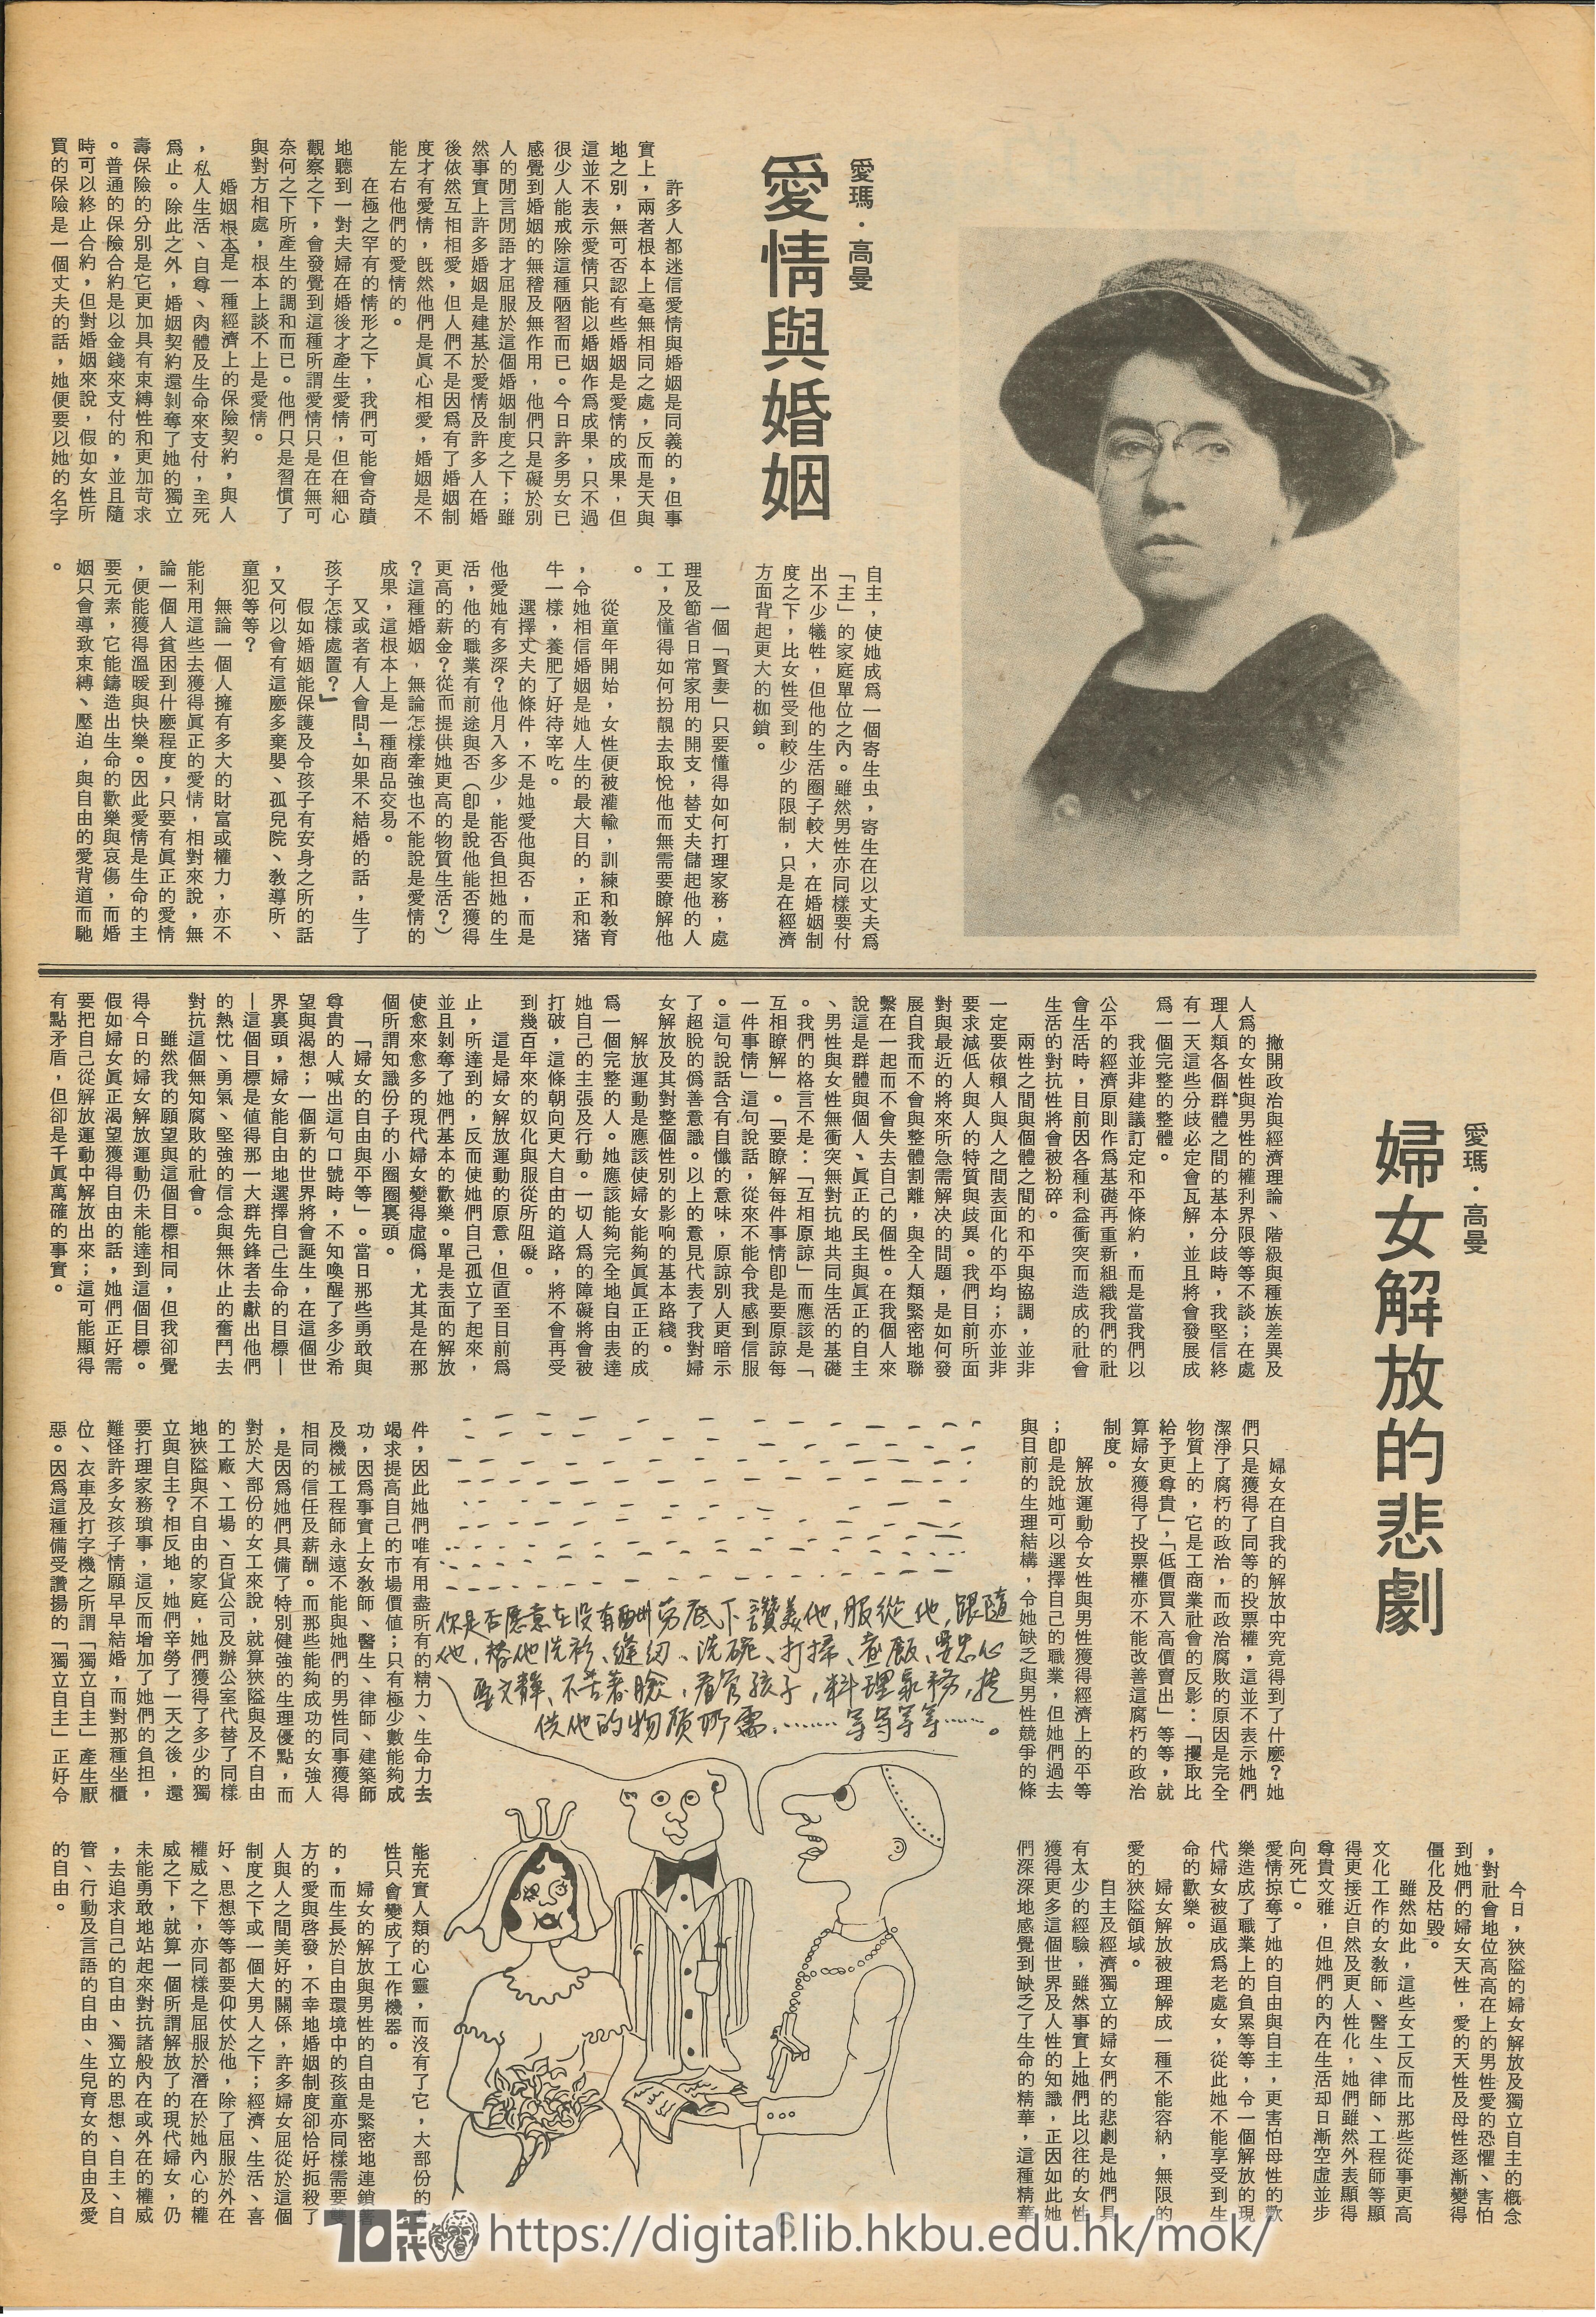  ���������2��� Tragedy of women liberation 愛瑪•高曼 